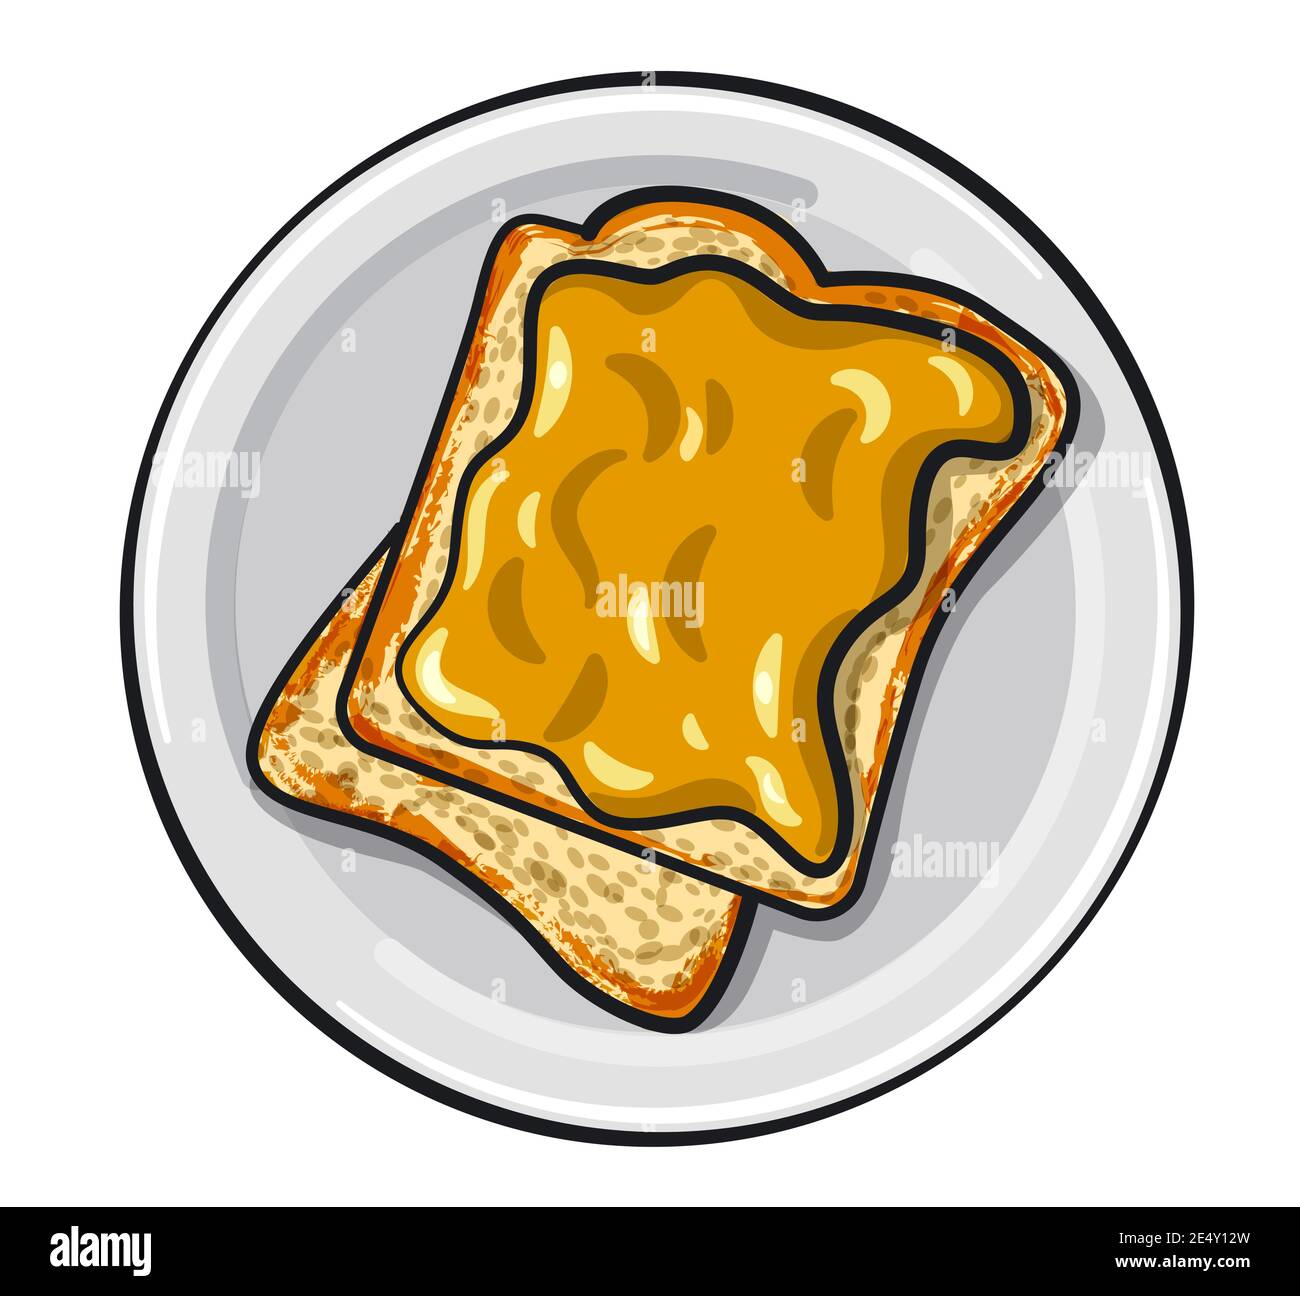 illustrazione dei sandwich di burro di arachidi con arachidi su un piastra Illustrazione Vettoriale